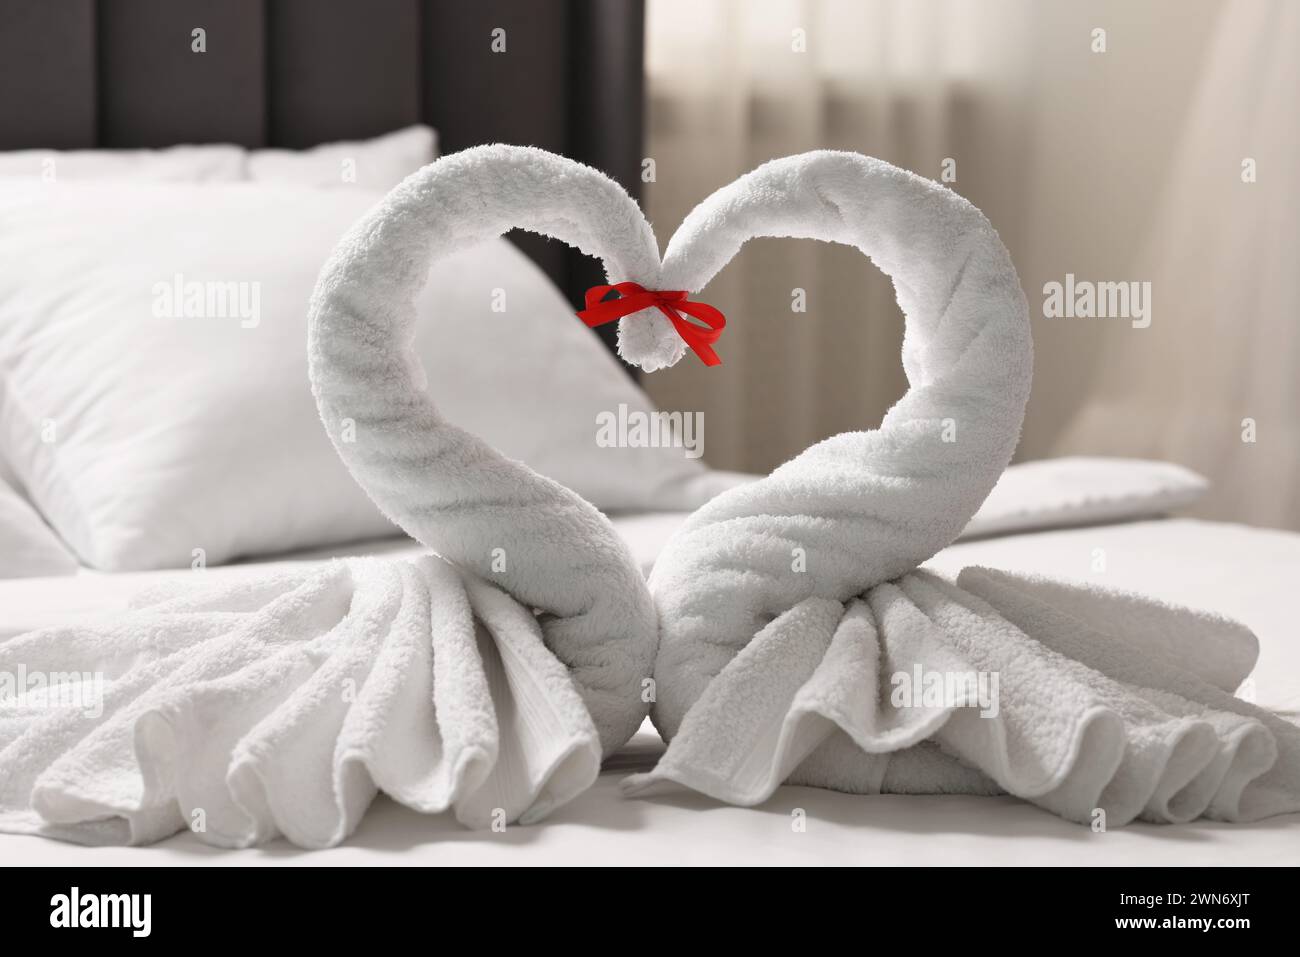 Luna di miele. Cigni fatti di asciugamani sul letto in camera Foto Stock